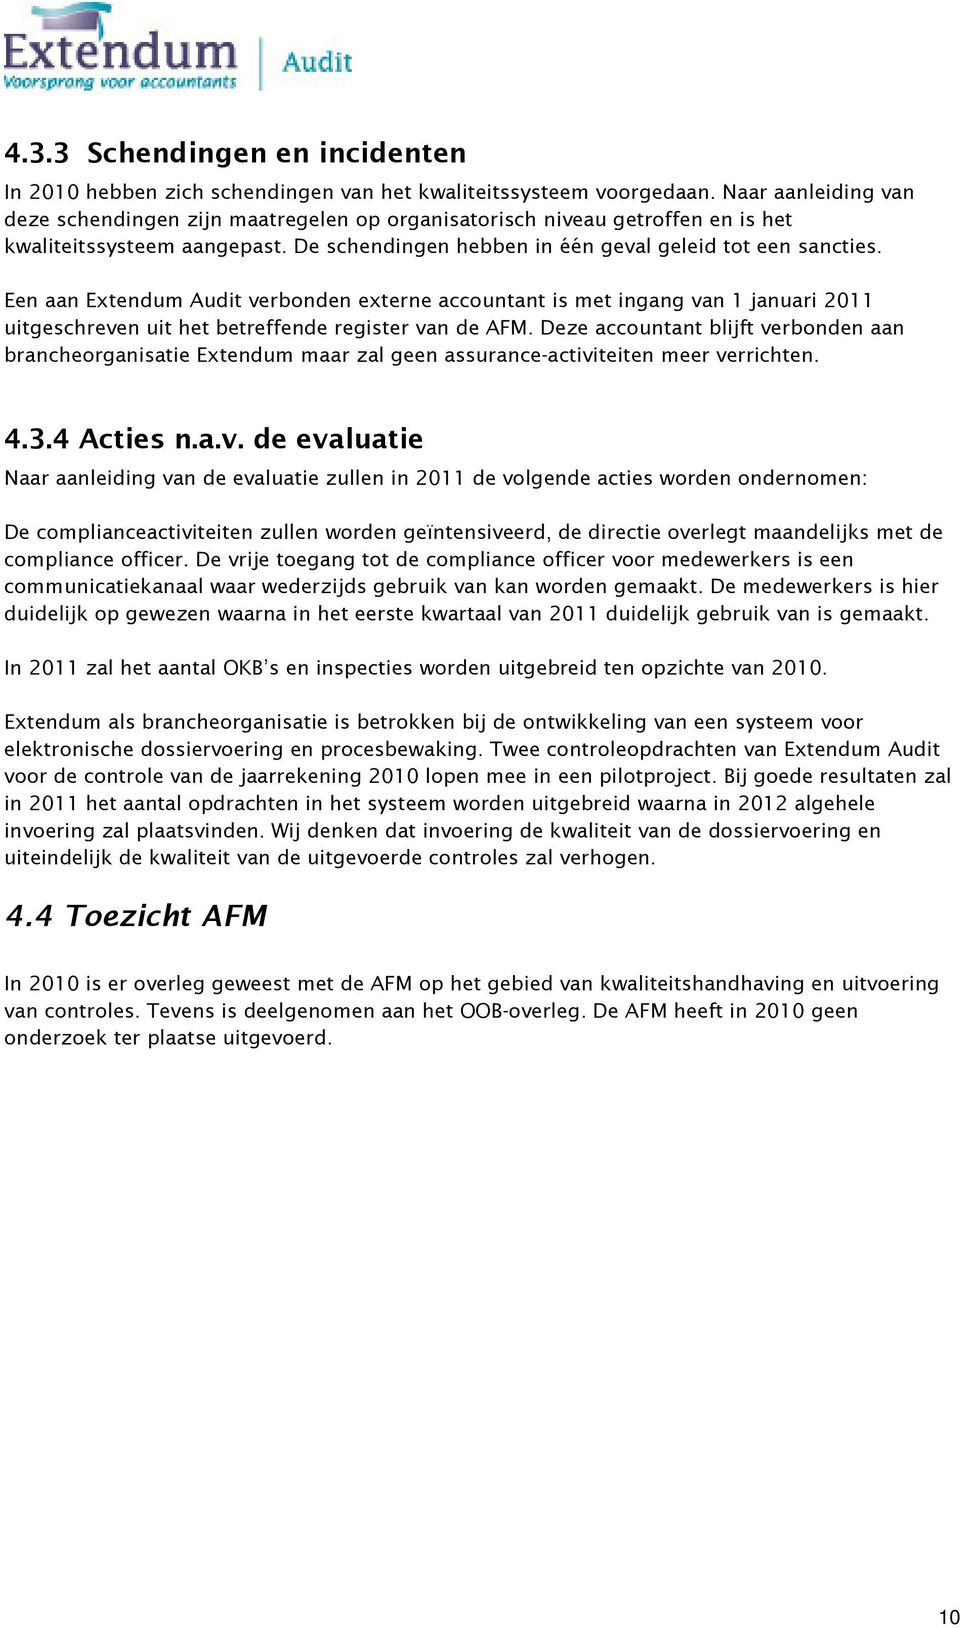 Een aan Extendum Audit verbonden externe accountant is met ingang van 1 januari 2011 uitgeschreven uit het betreffende register van de AFM.